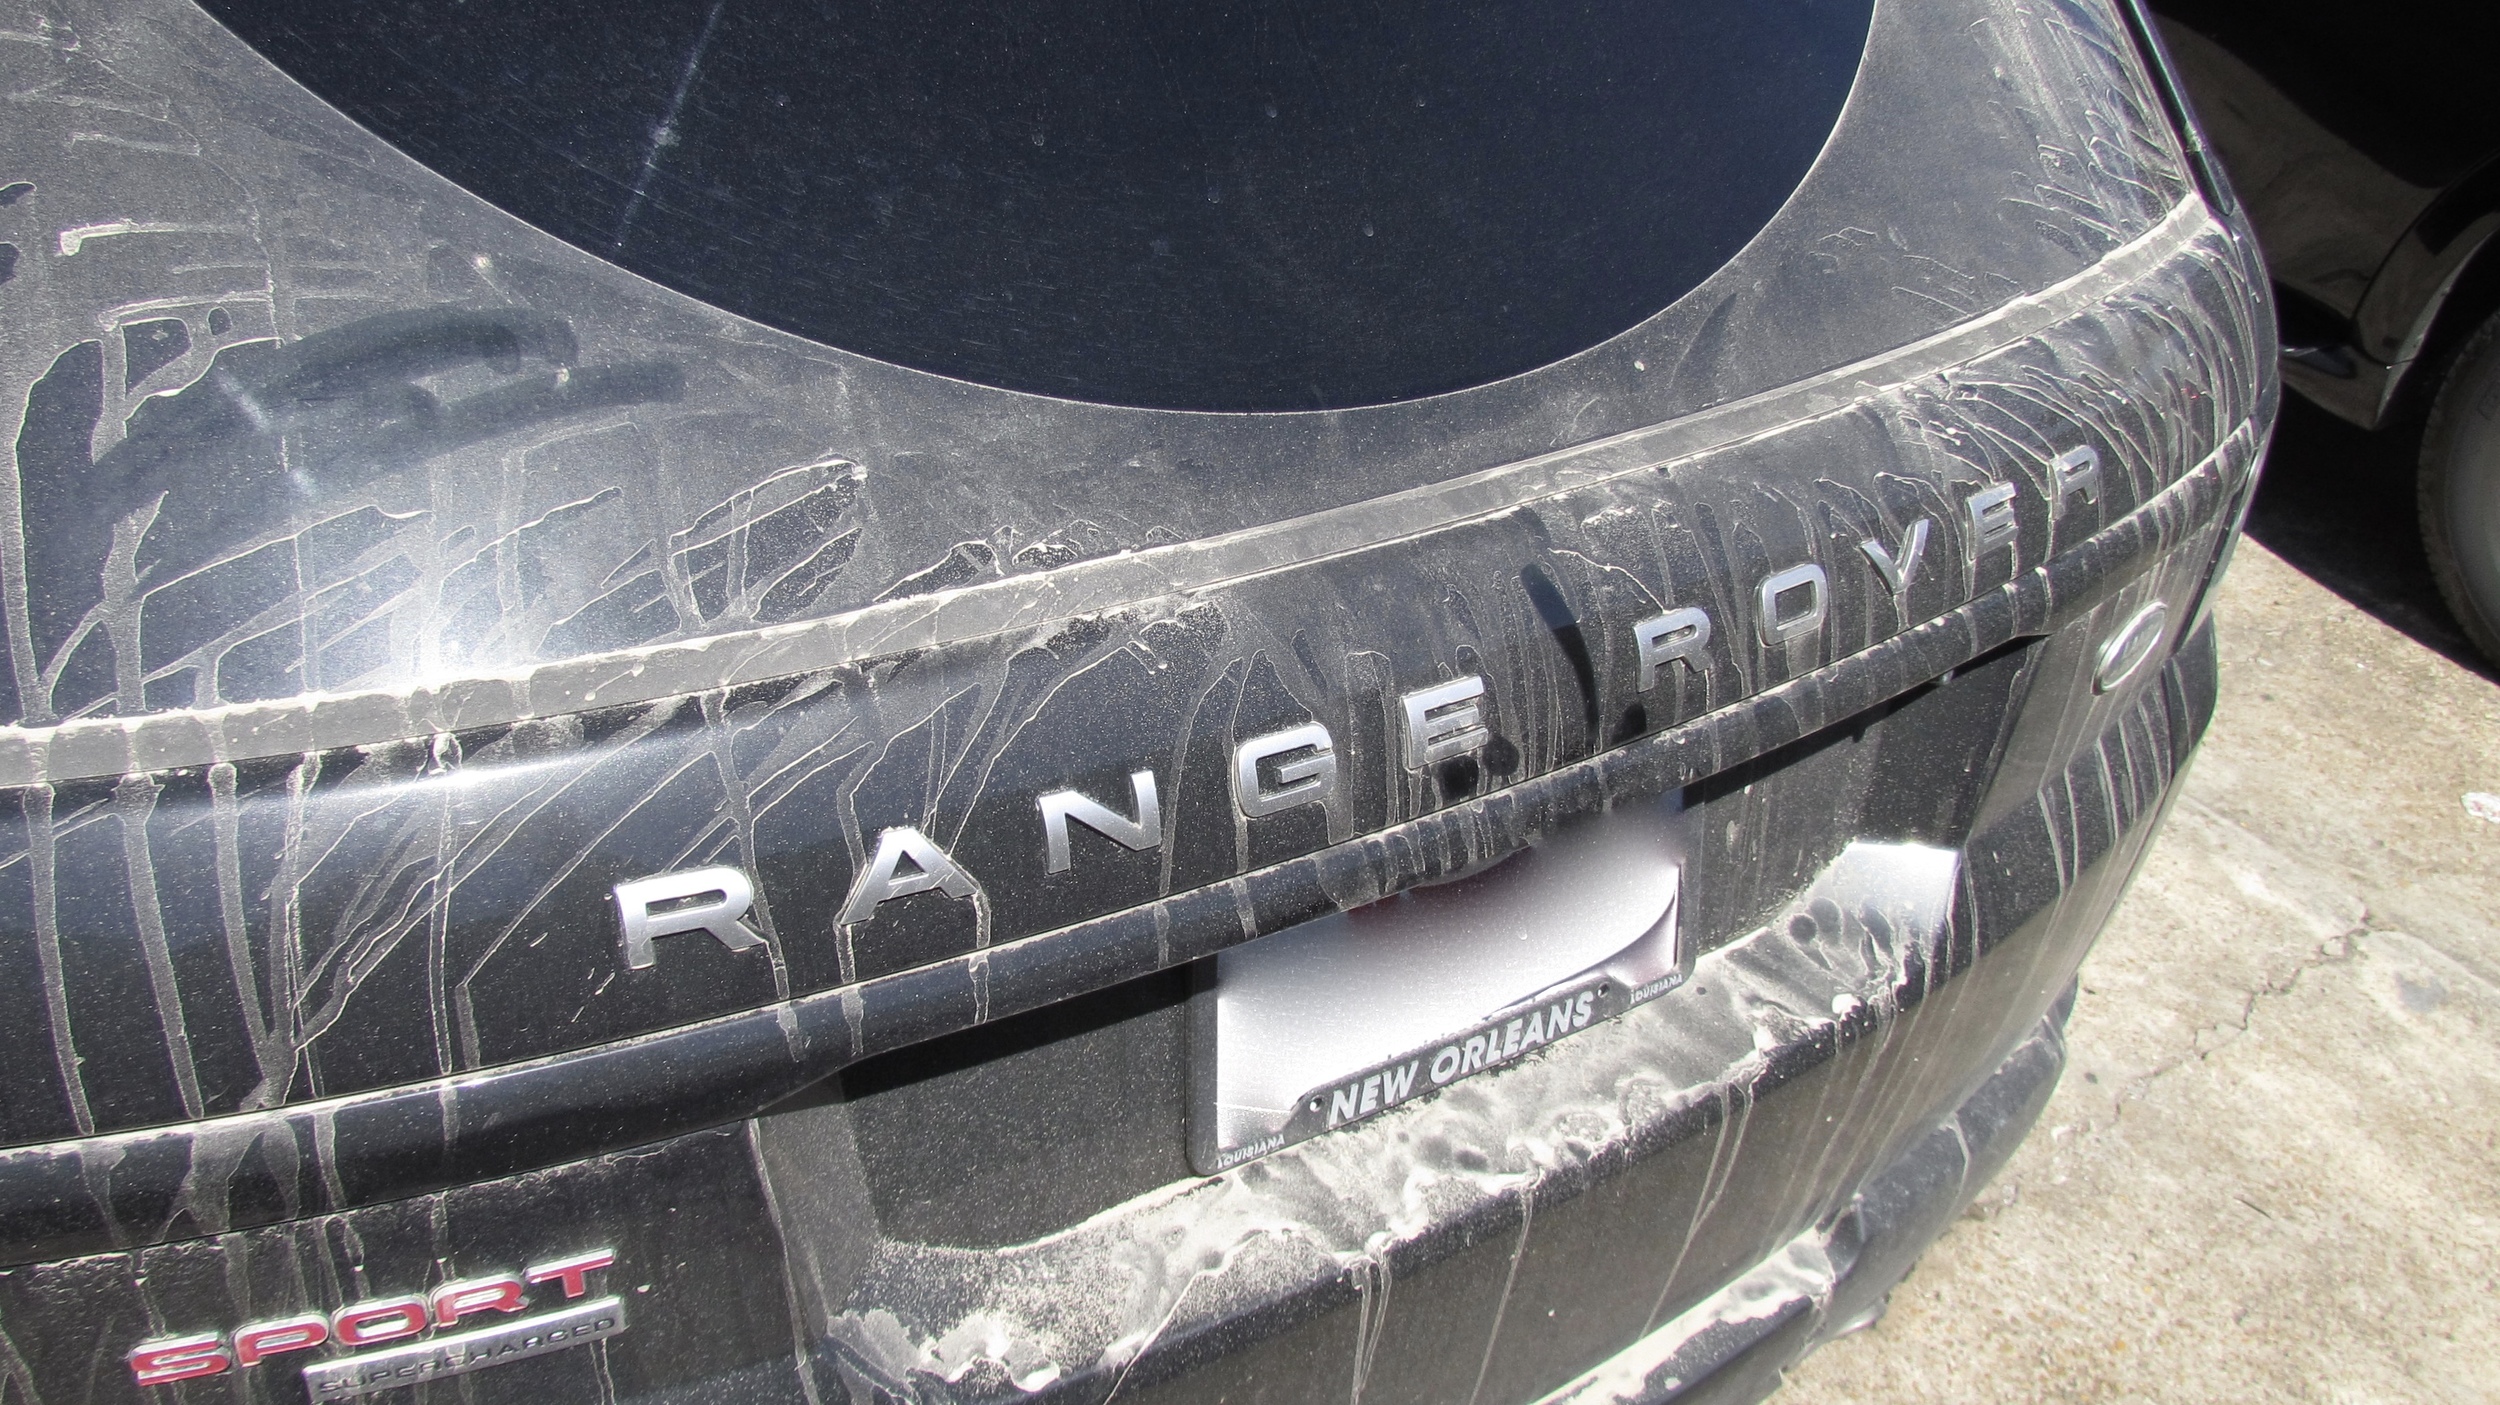 Range Rover Sport (New Car Slate)